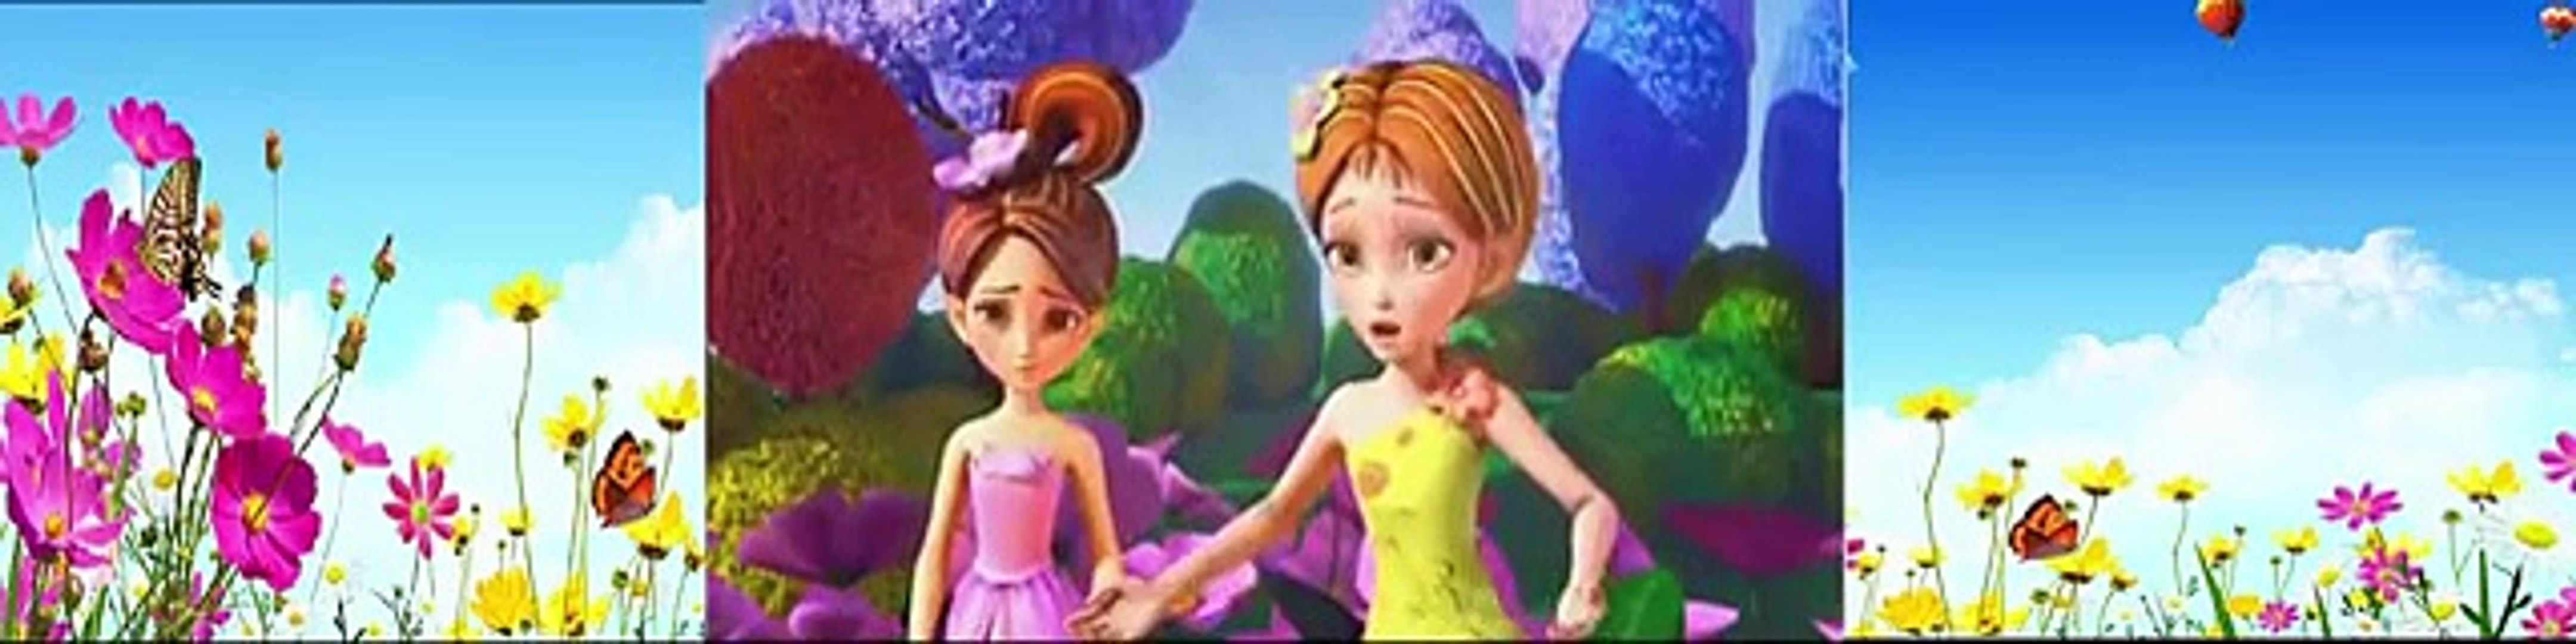 Películas completas de Barbie ✿ Peliculas de Disney Completas en Español ✿  Peliculas infan - Dailymotion Video